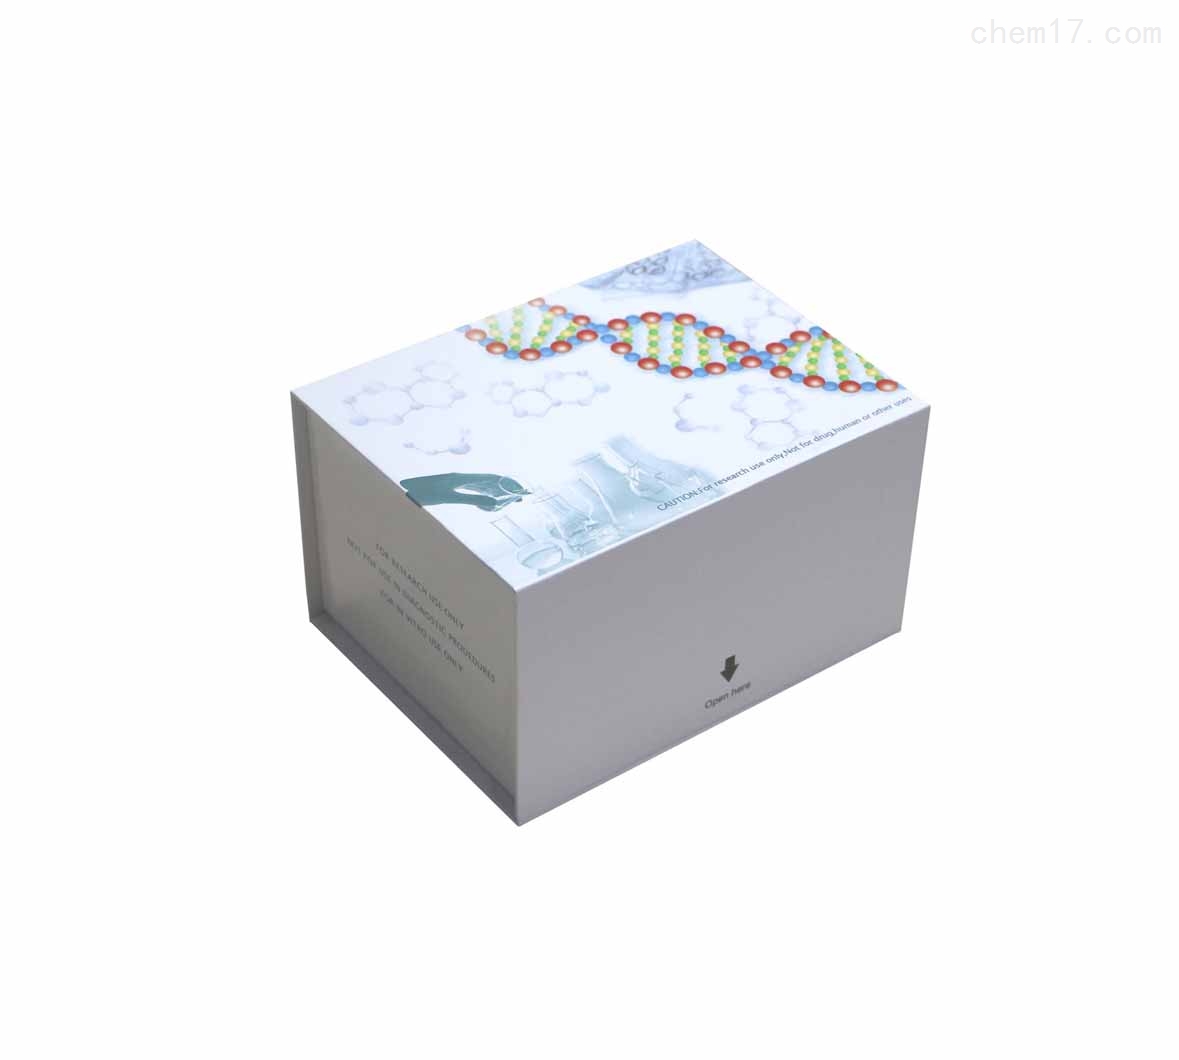 人磷酸肌酸激酶(CPK)ELISA试剂盒买家推荐